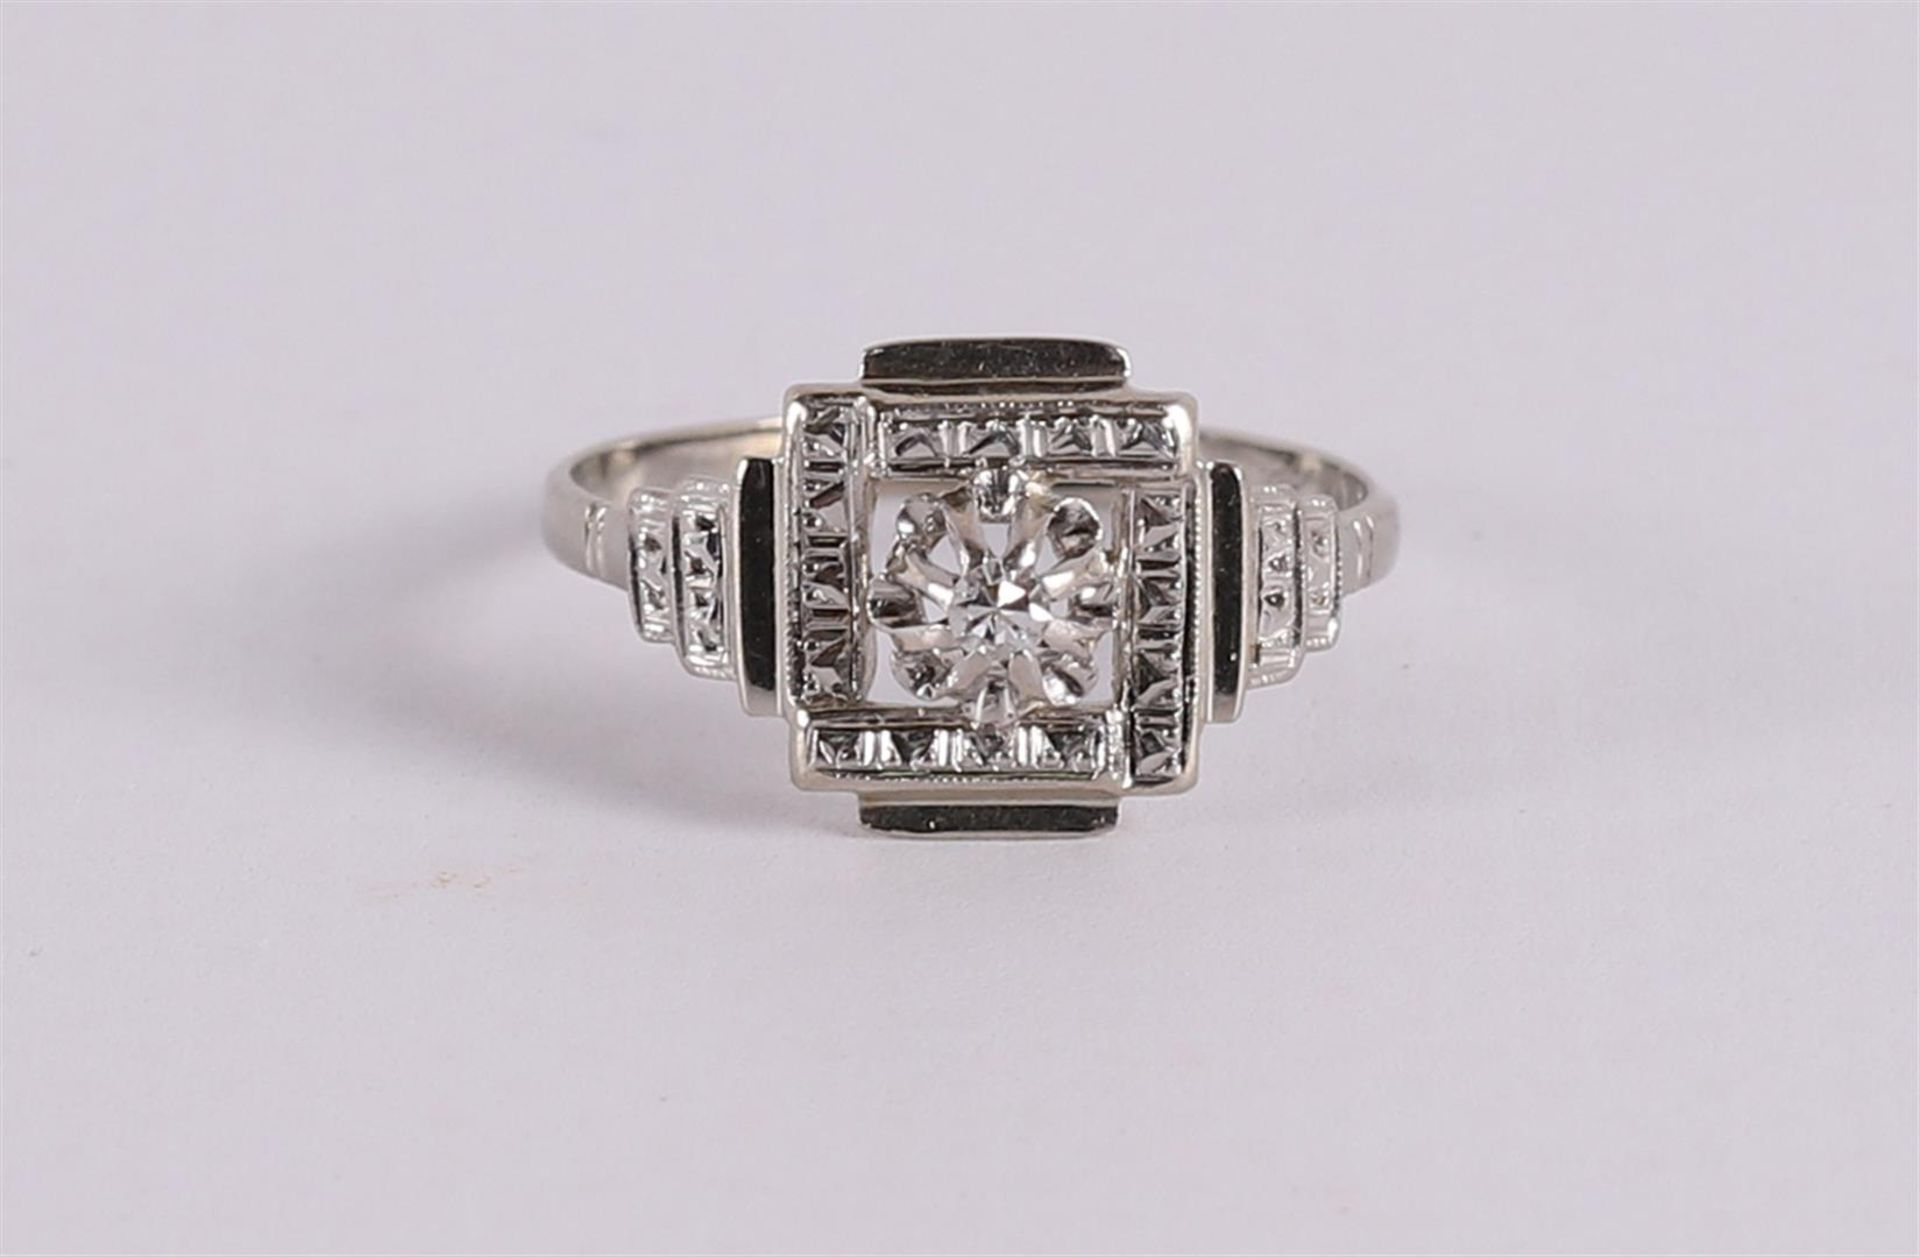 An 18 kt gold Art Deco ring with an octagon cut diamond.